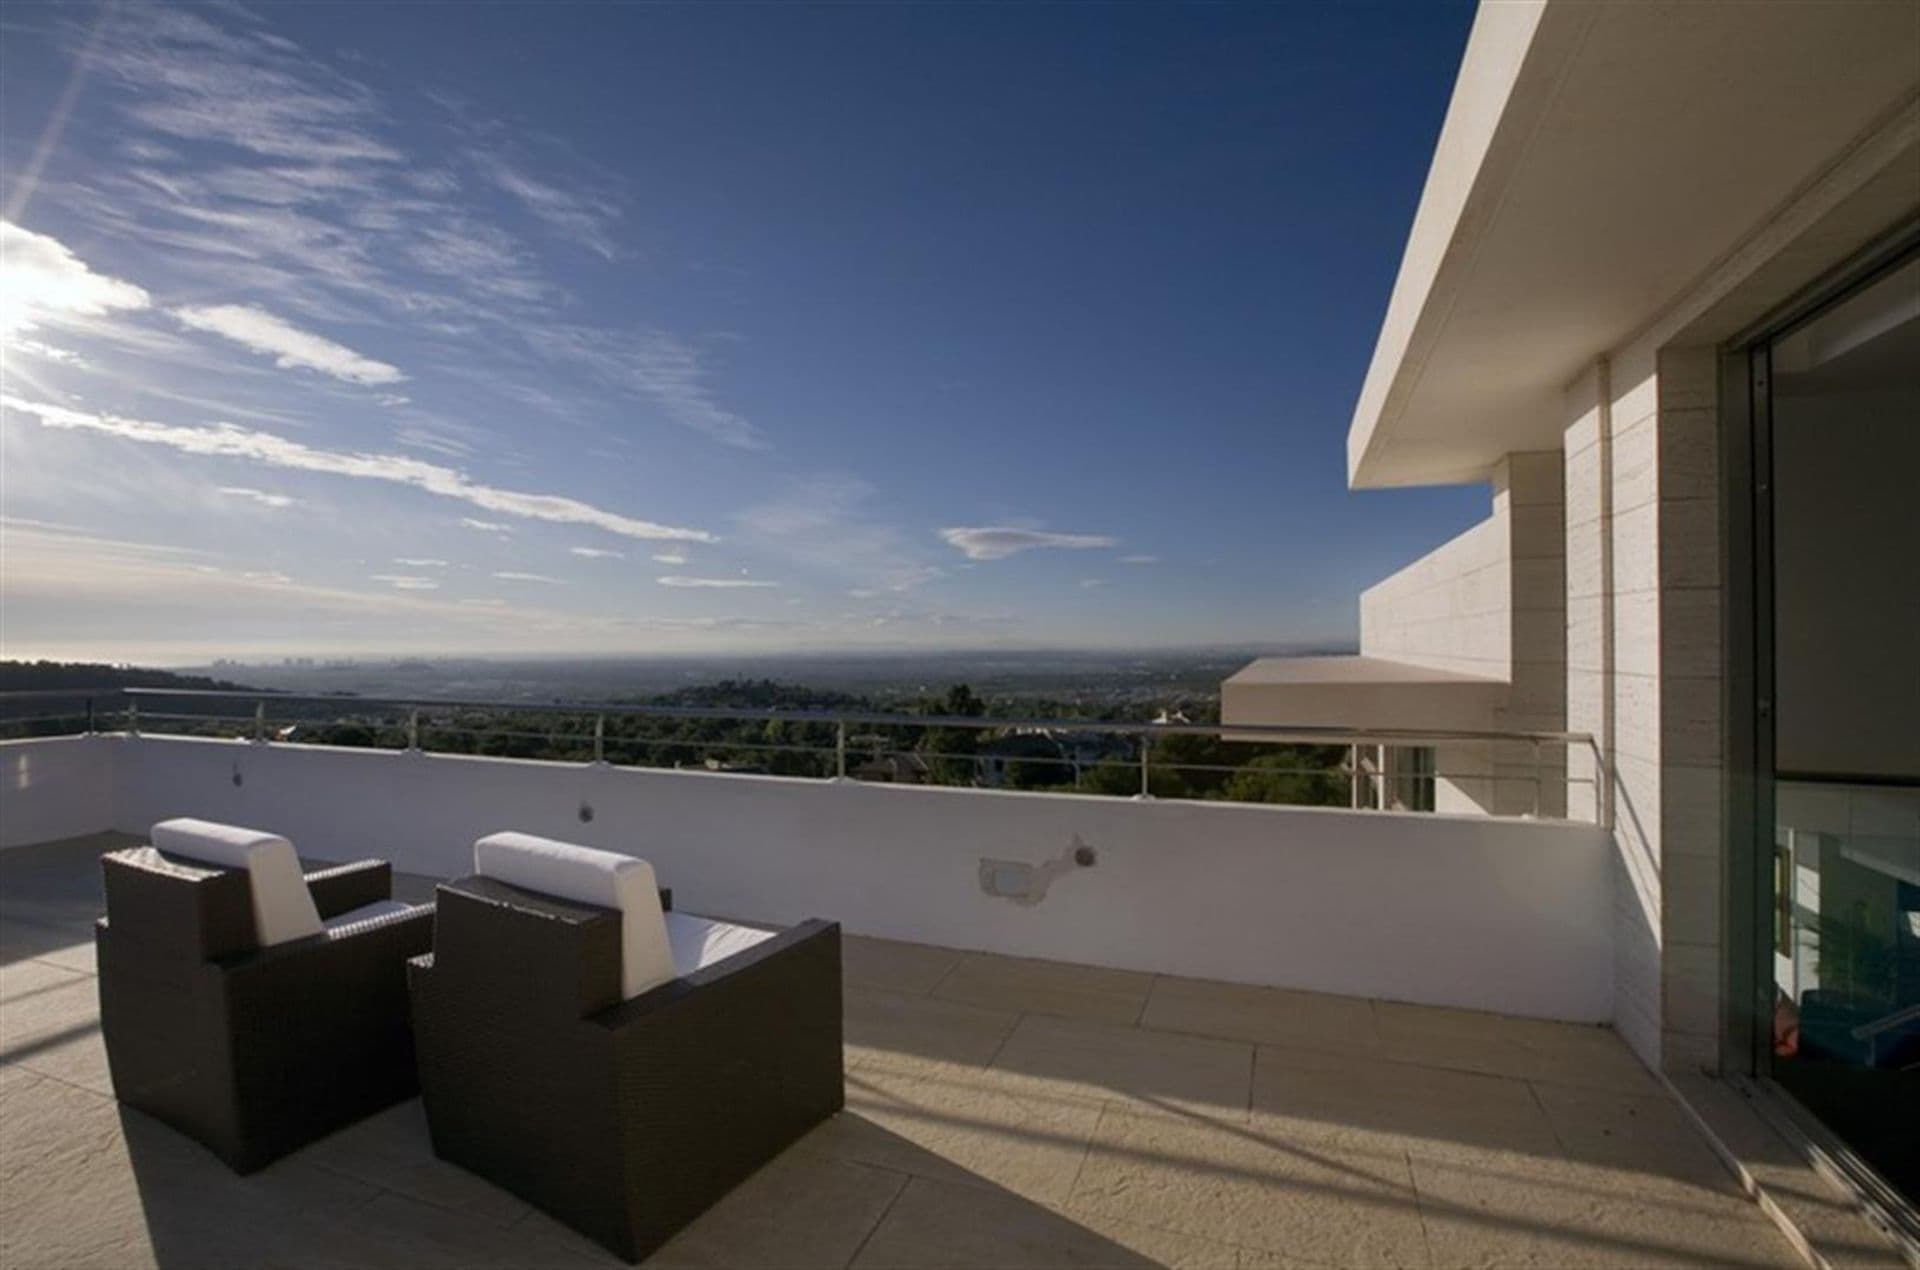 Villa im modernen Stil in der hervorragenden Urbanisation Los Monasterios in Puzol, 20 km von Valencia.Sie bietet Grosszügigkeit, Komfort im modernen Stil und ist sehr sophistisch in seiner Ausstrahlung, kombiniert mit einem hervorragenden Ausblick